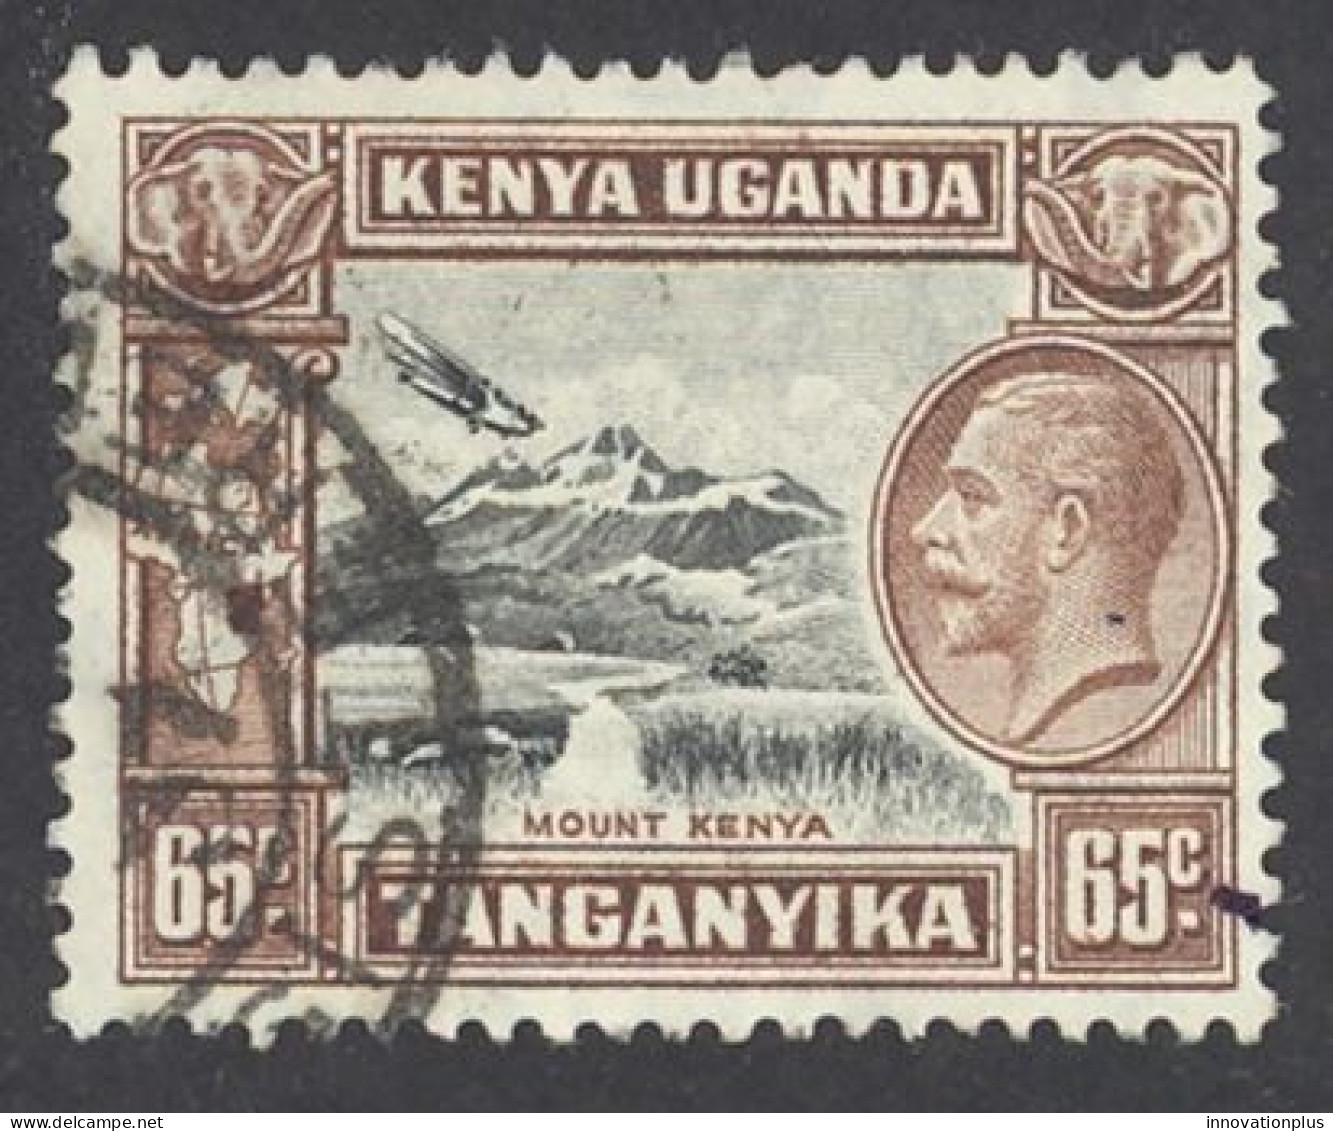 Kenya, Uganda, Tanzania Sc# 53 Used 1935 65c King George V - Kenya, Oeganda & Tanzania